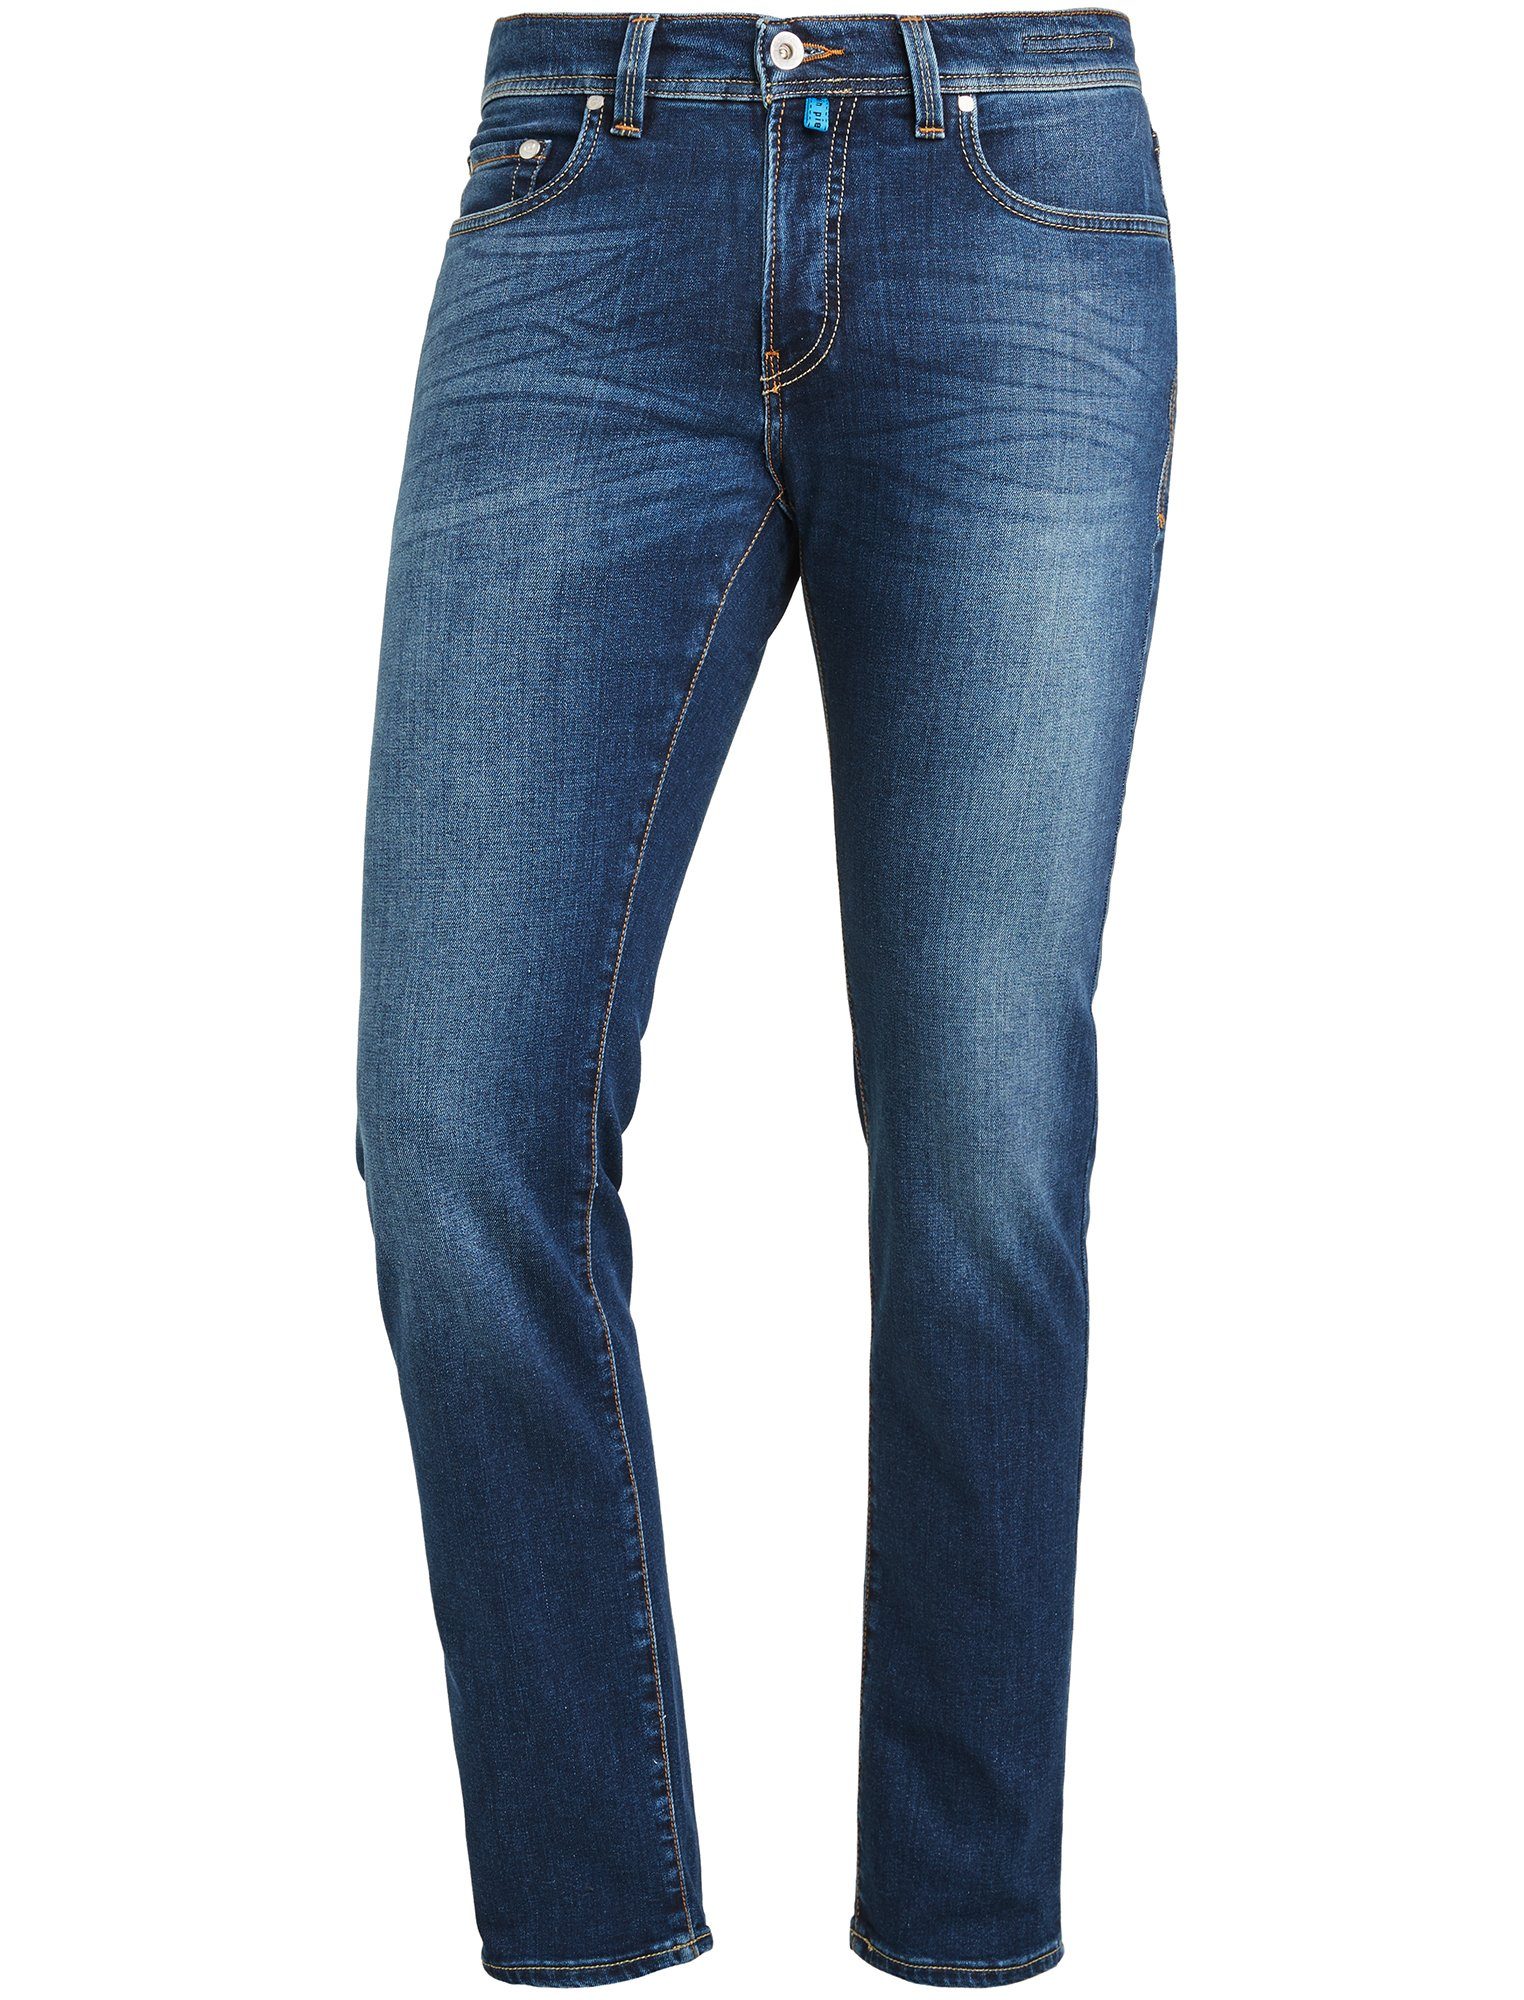 Pierre Cardin 5-Pocket-Jeans PIERRE CARDIN FUTUREFLEX LYON dark vintage blue used washed 3451 8880.